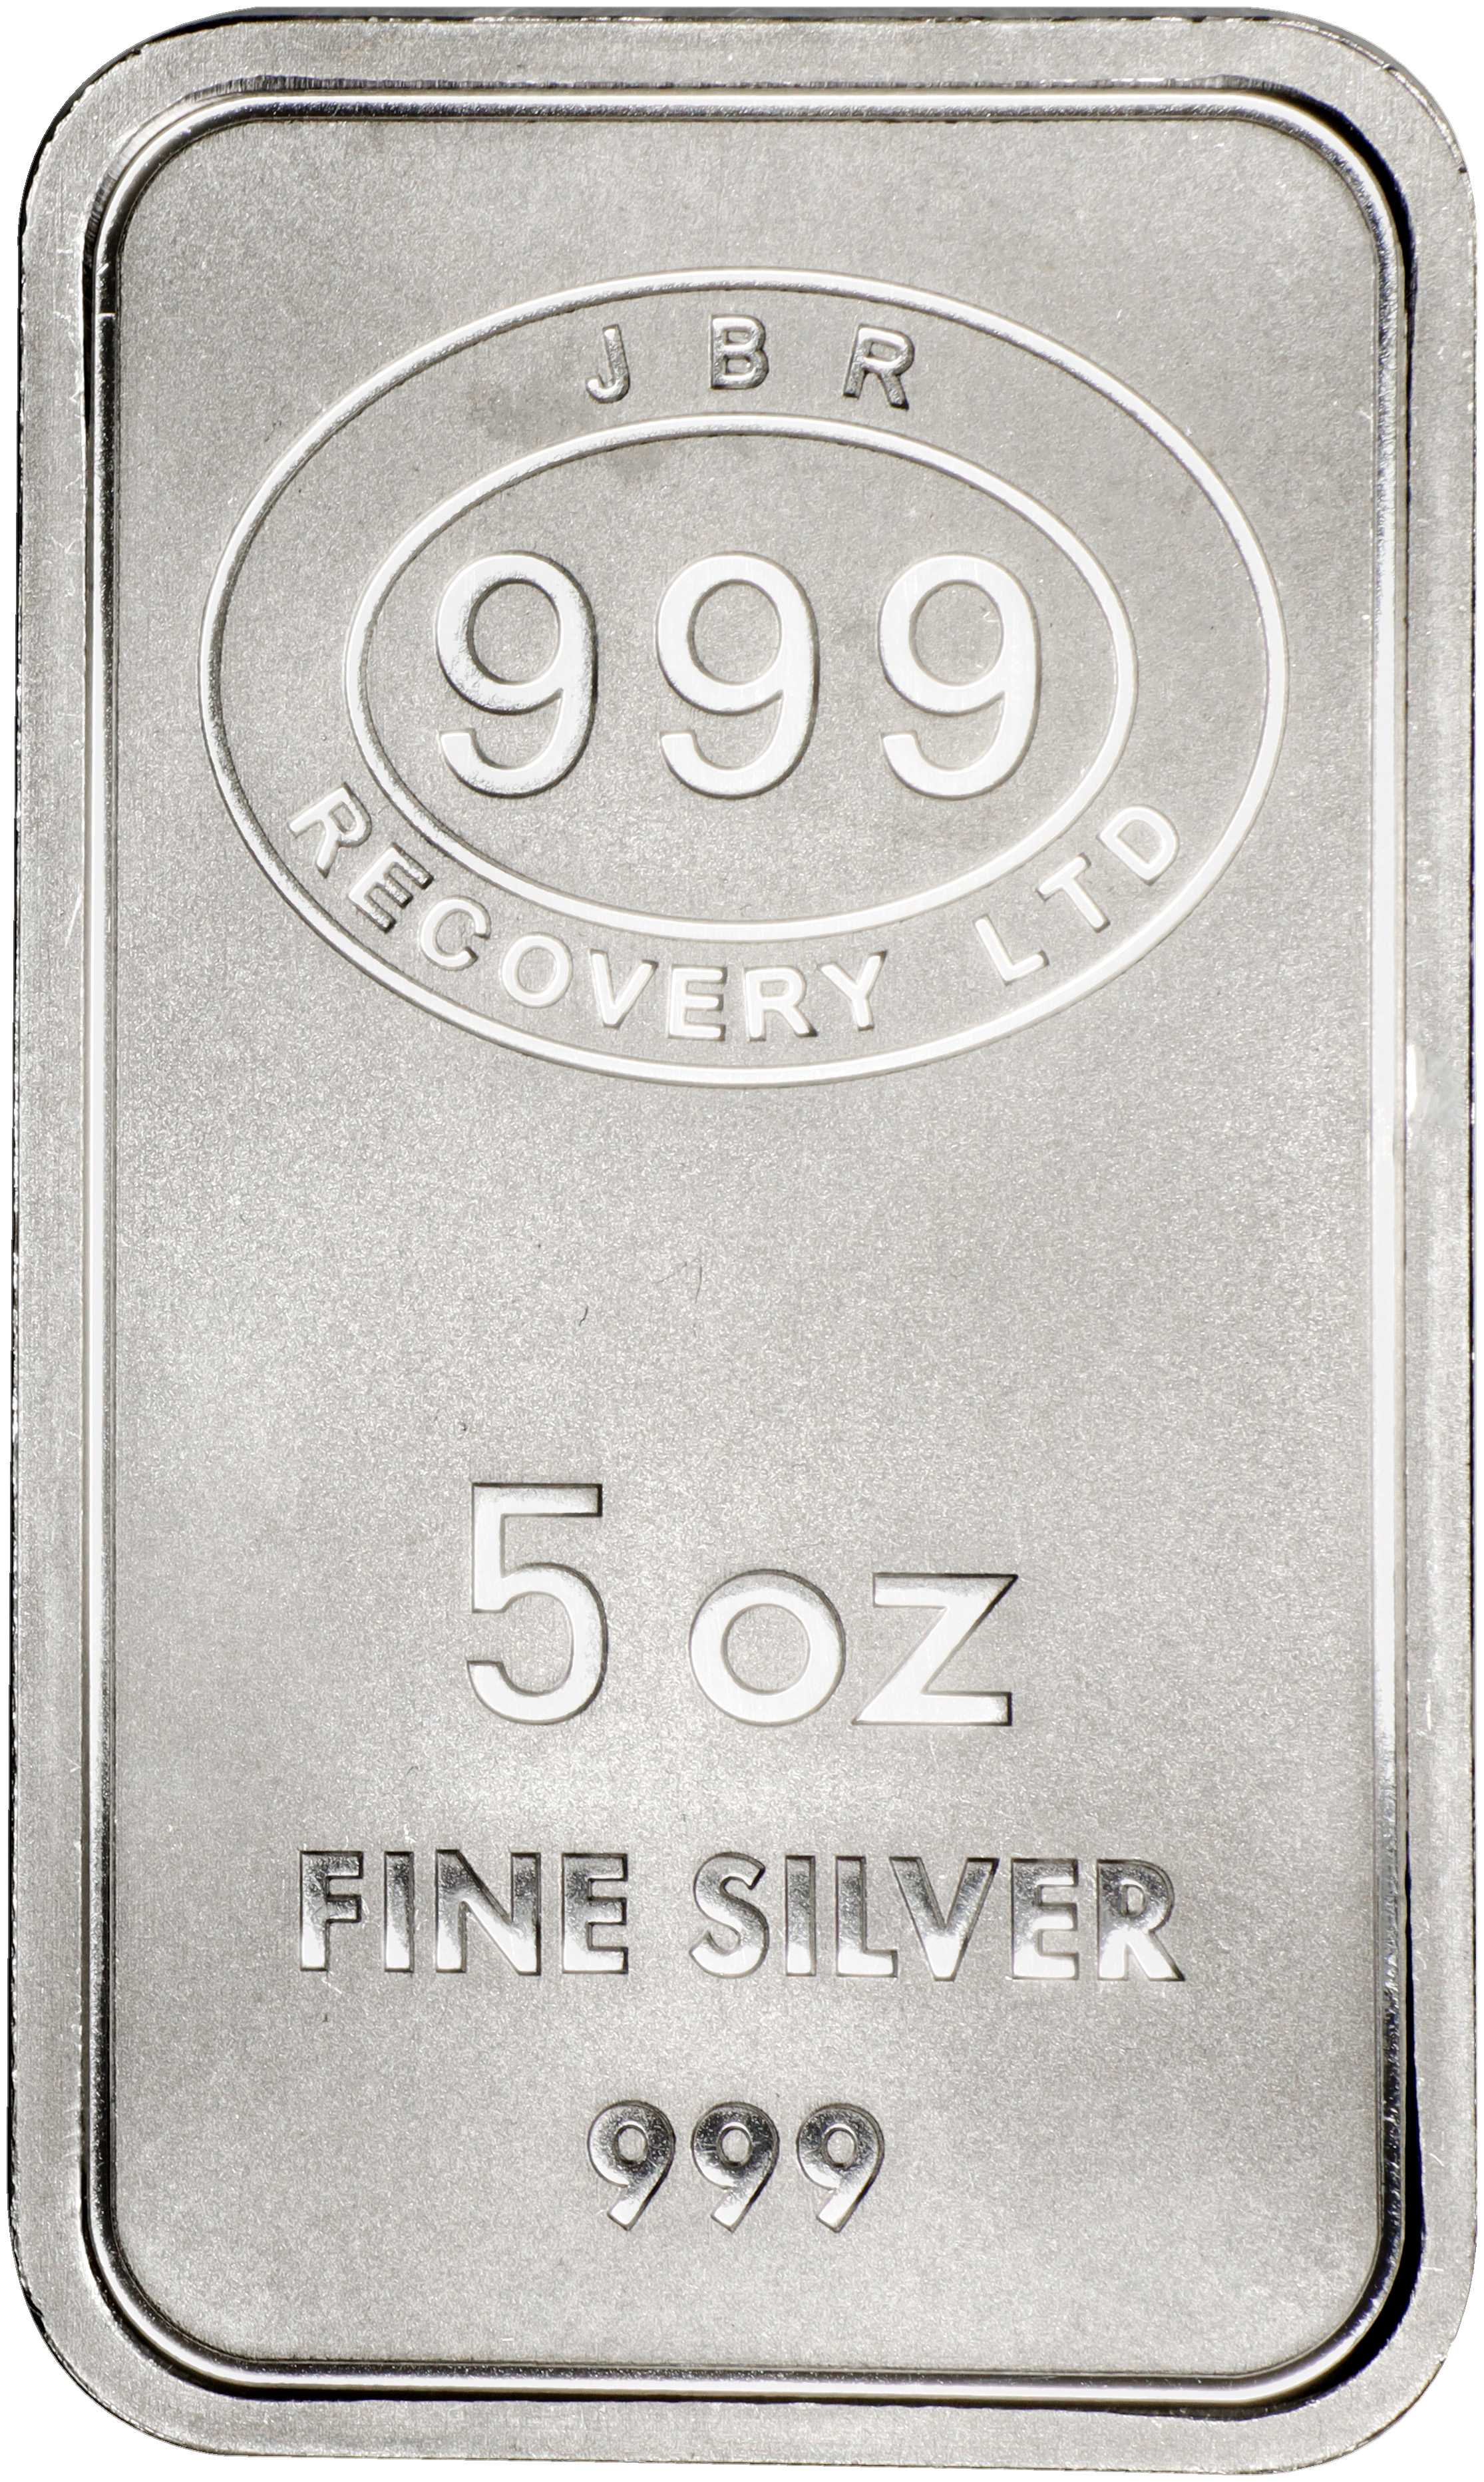 5 oz Silver Bar JBR